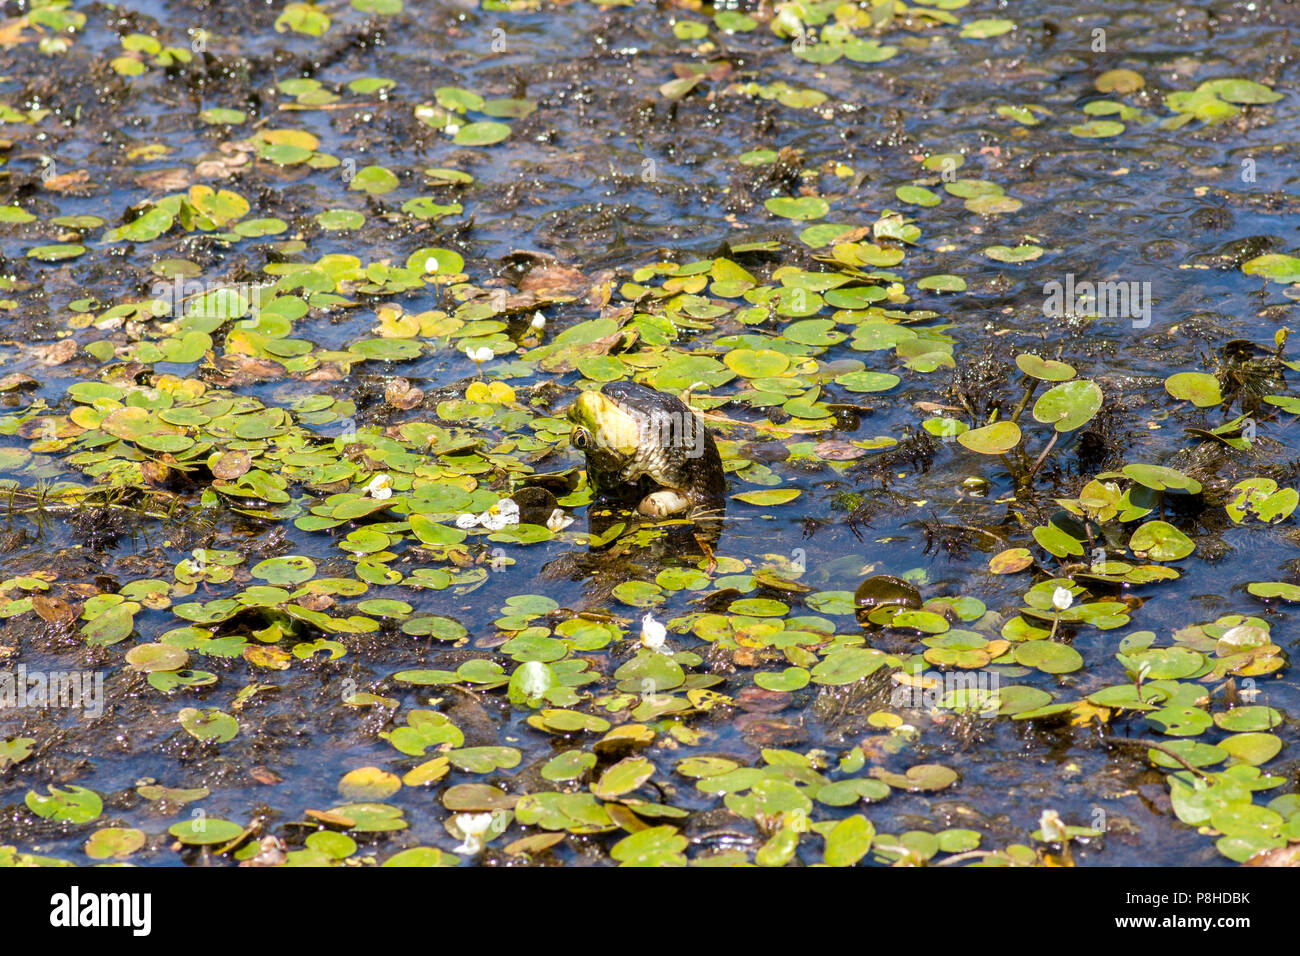 Une couleuvre d'eau (Nerodia sipedon) se nourrissent d'une grenouille verte (Lithobates clamitans) dans un marais. Banque D'Images